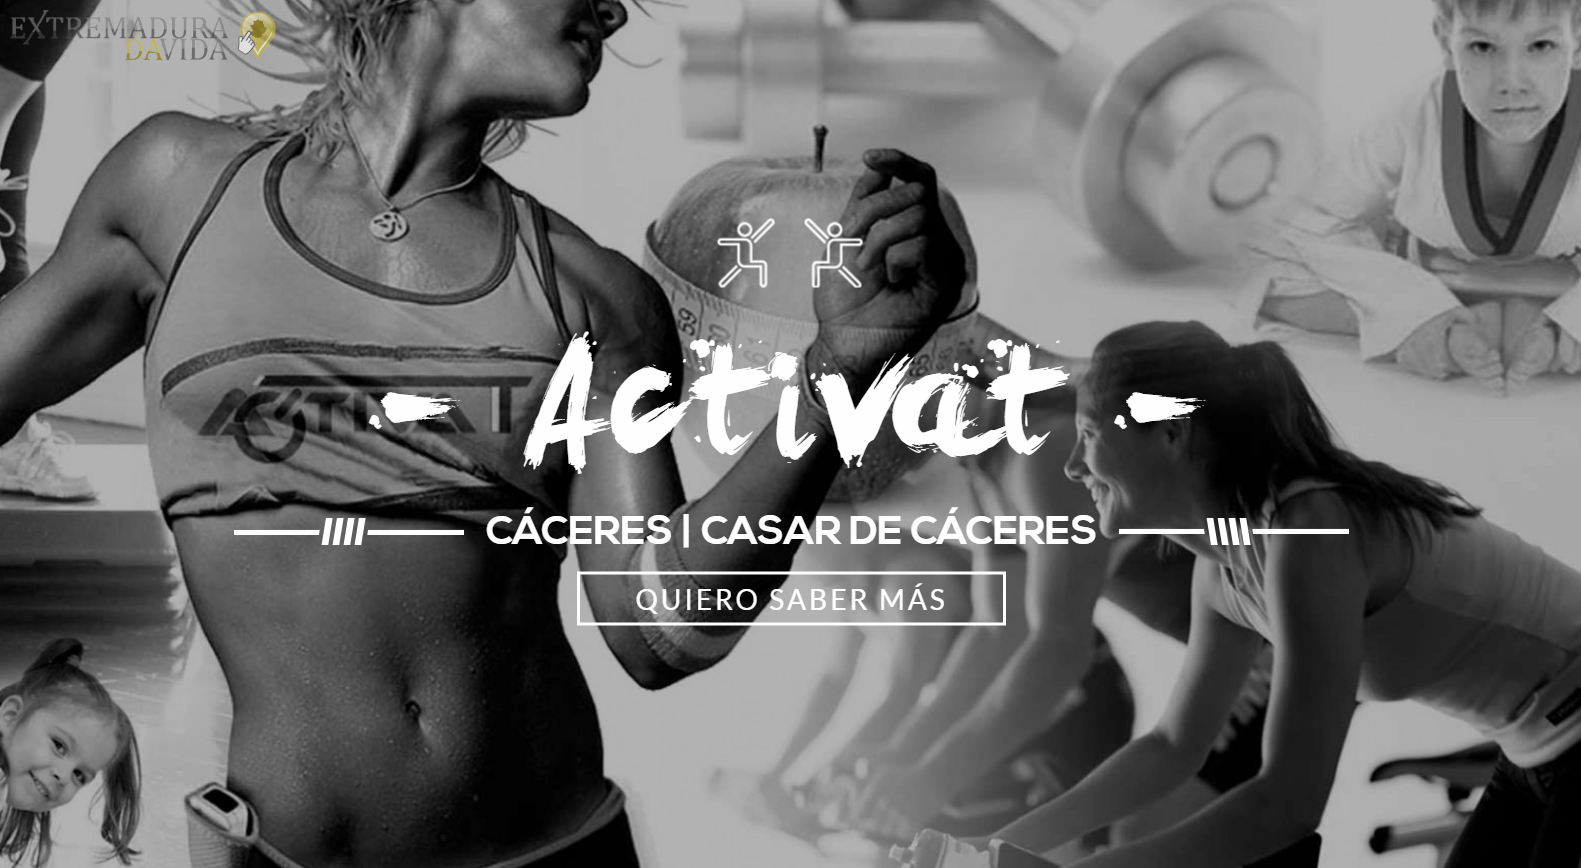 Centro de actividades deportivas en Cáceres Activat 